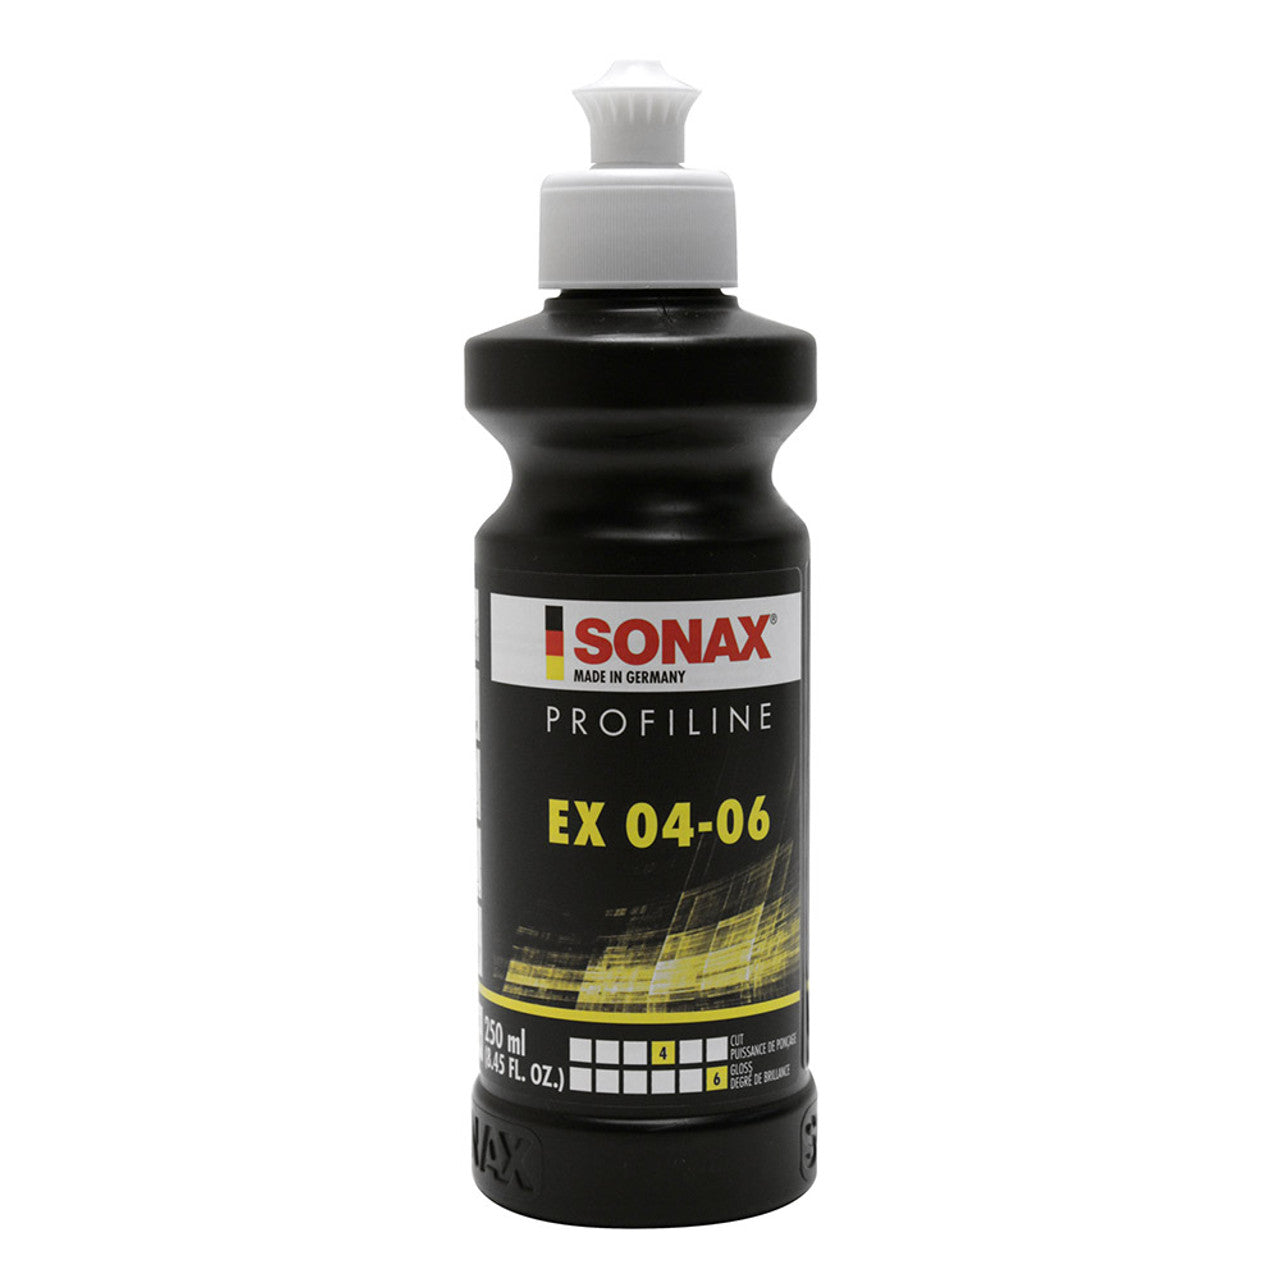 Sonax EX 04-06 - 250ml